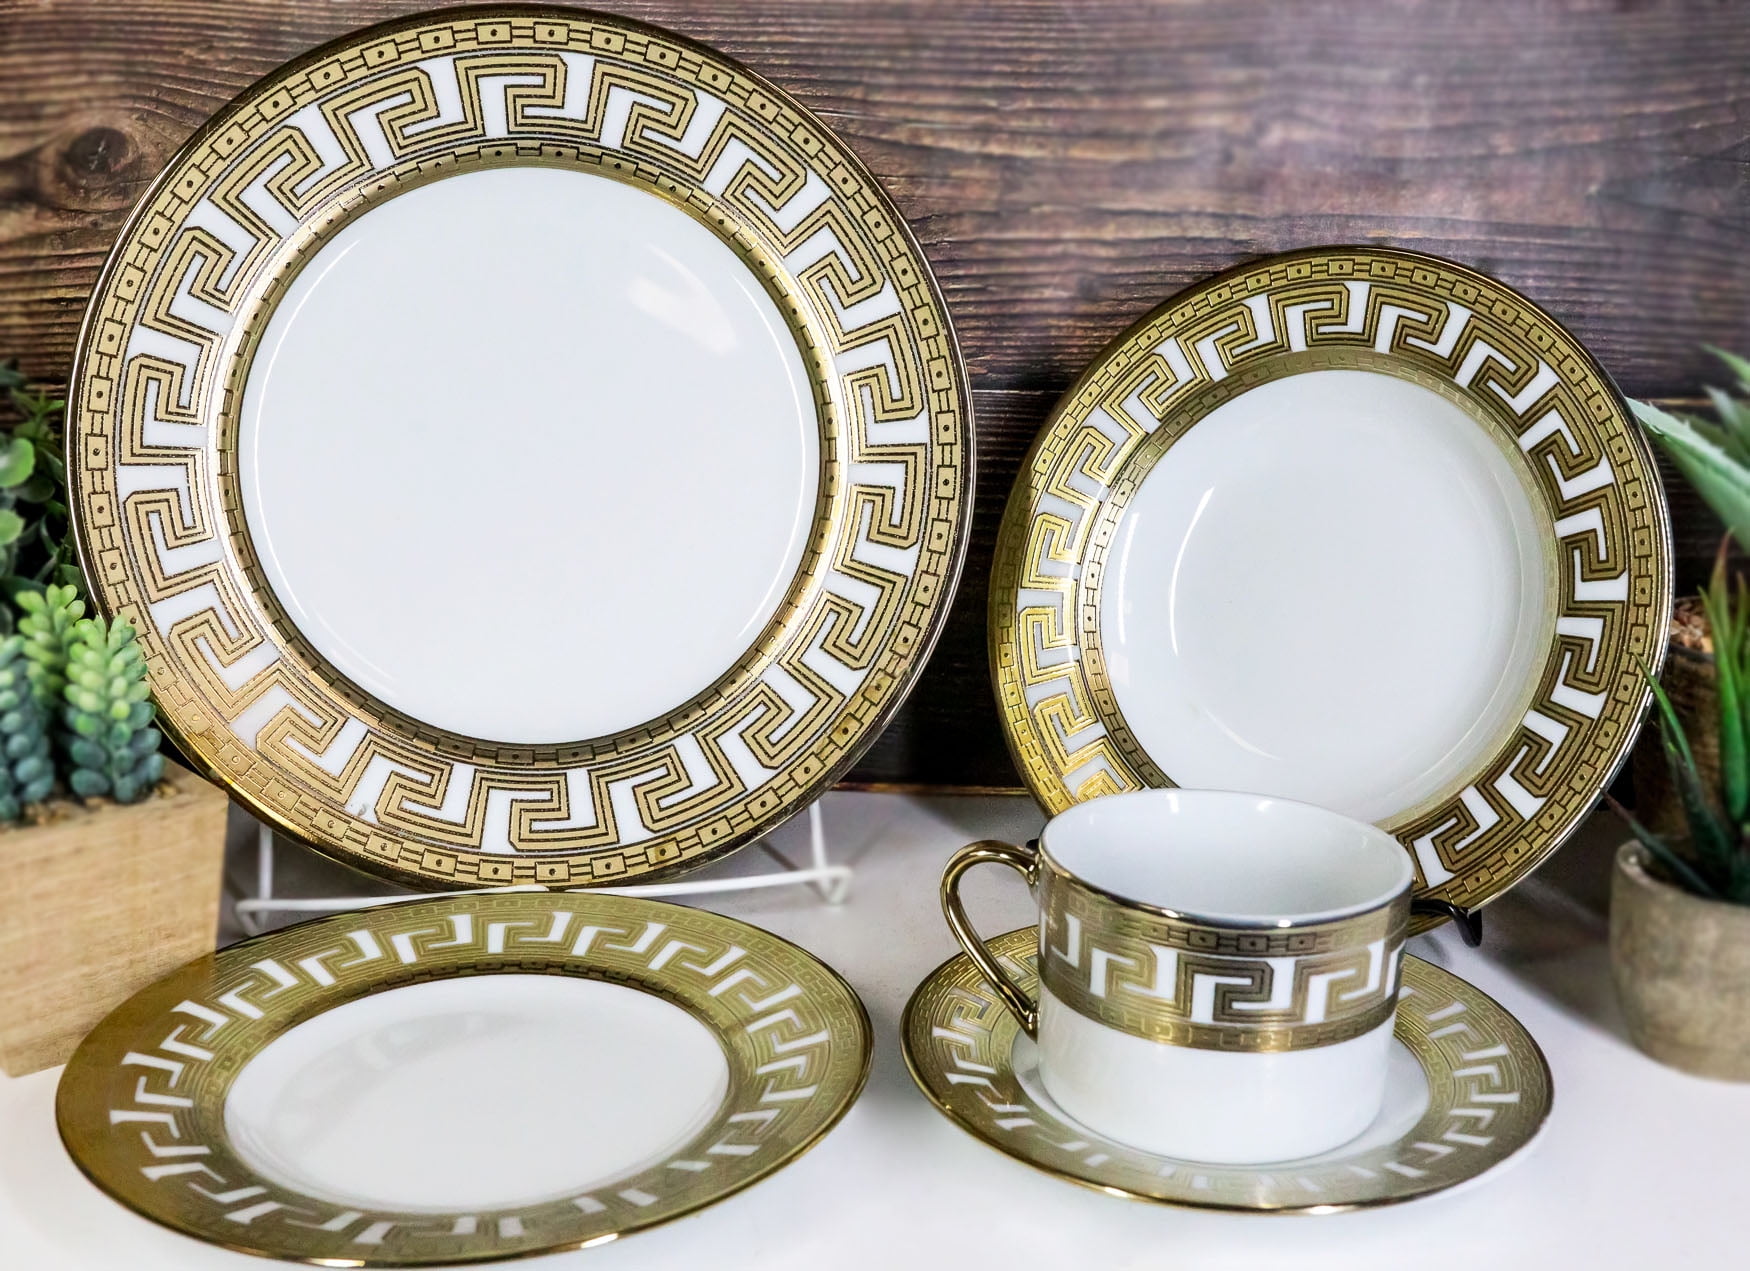 Luxury Golden Border Porcelain Dinner Plate Black Striped Ceramic Dishes  Household Tableware Set Hotel Restaurant Plate